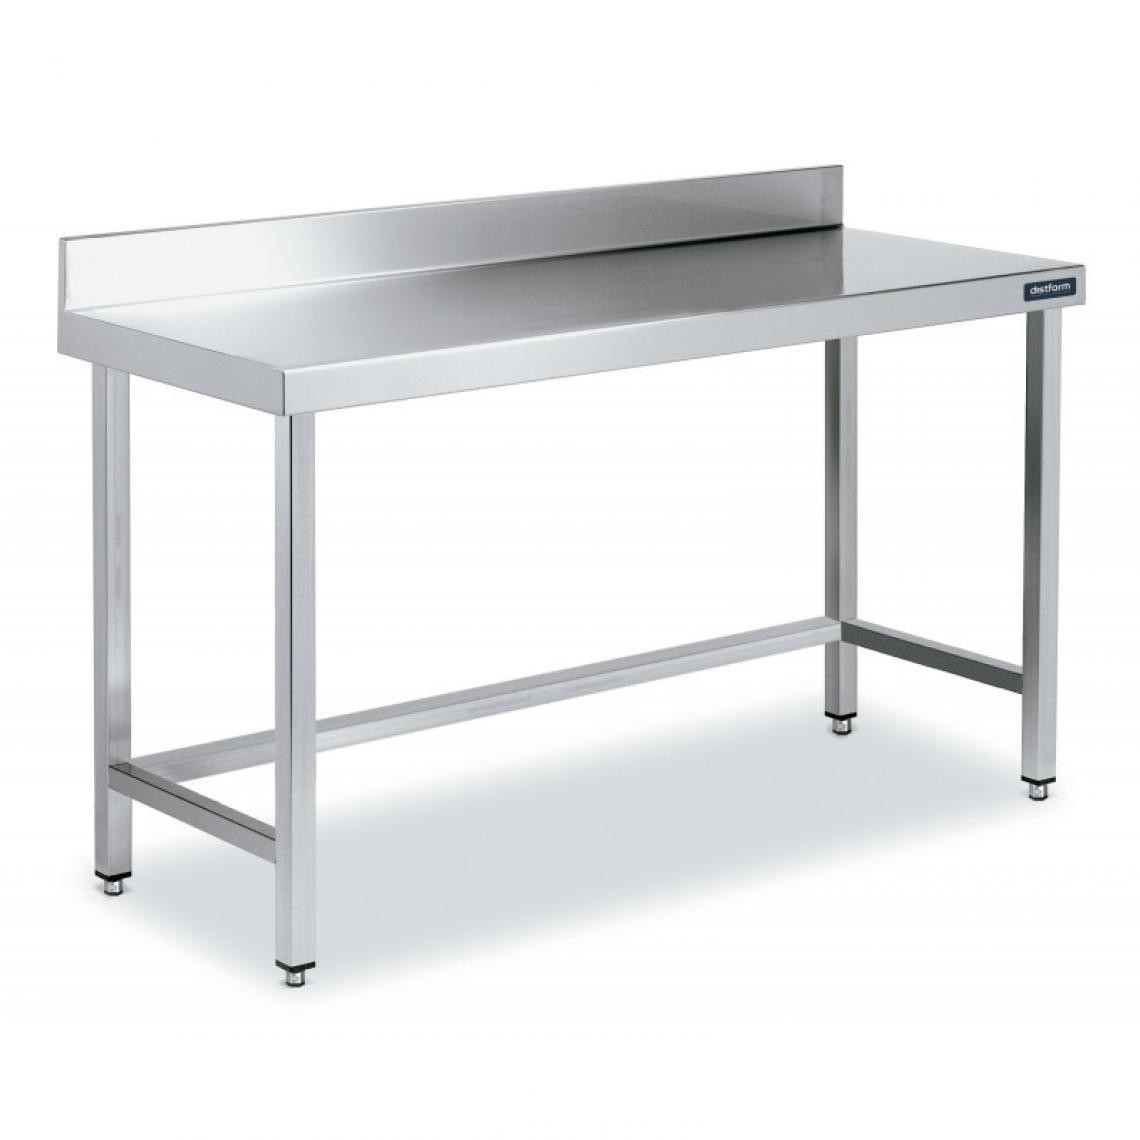 DISTFORM - Table Adossée en Inox avec Renforts Profondeur 550 mm - Distform - Acier inoxydable600x550 - Tables à manger